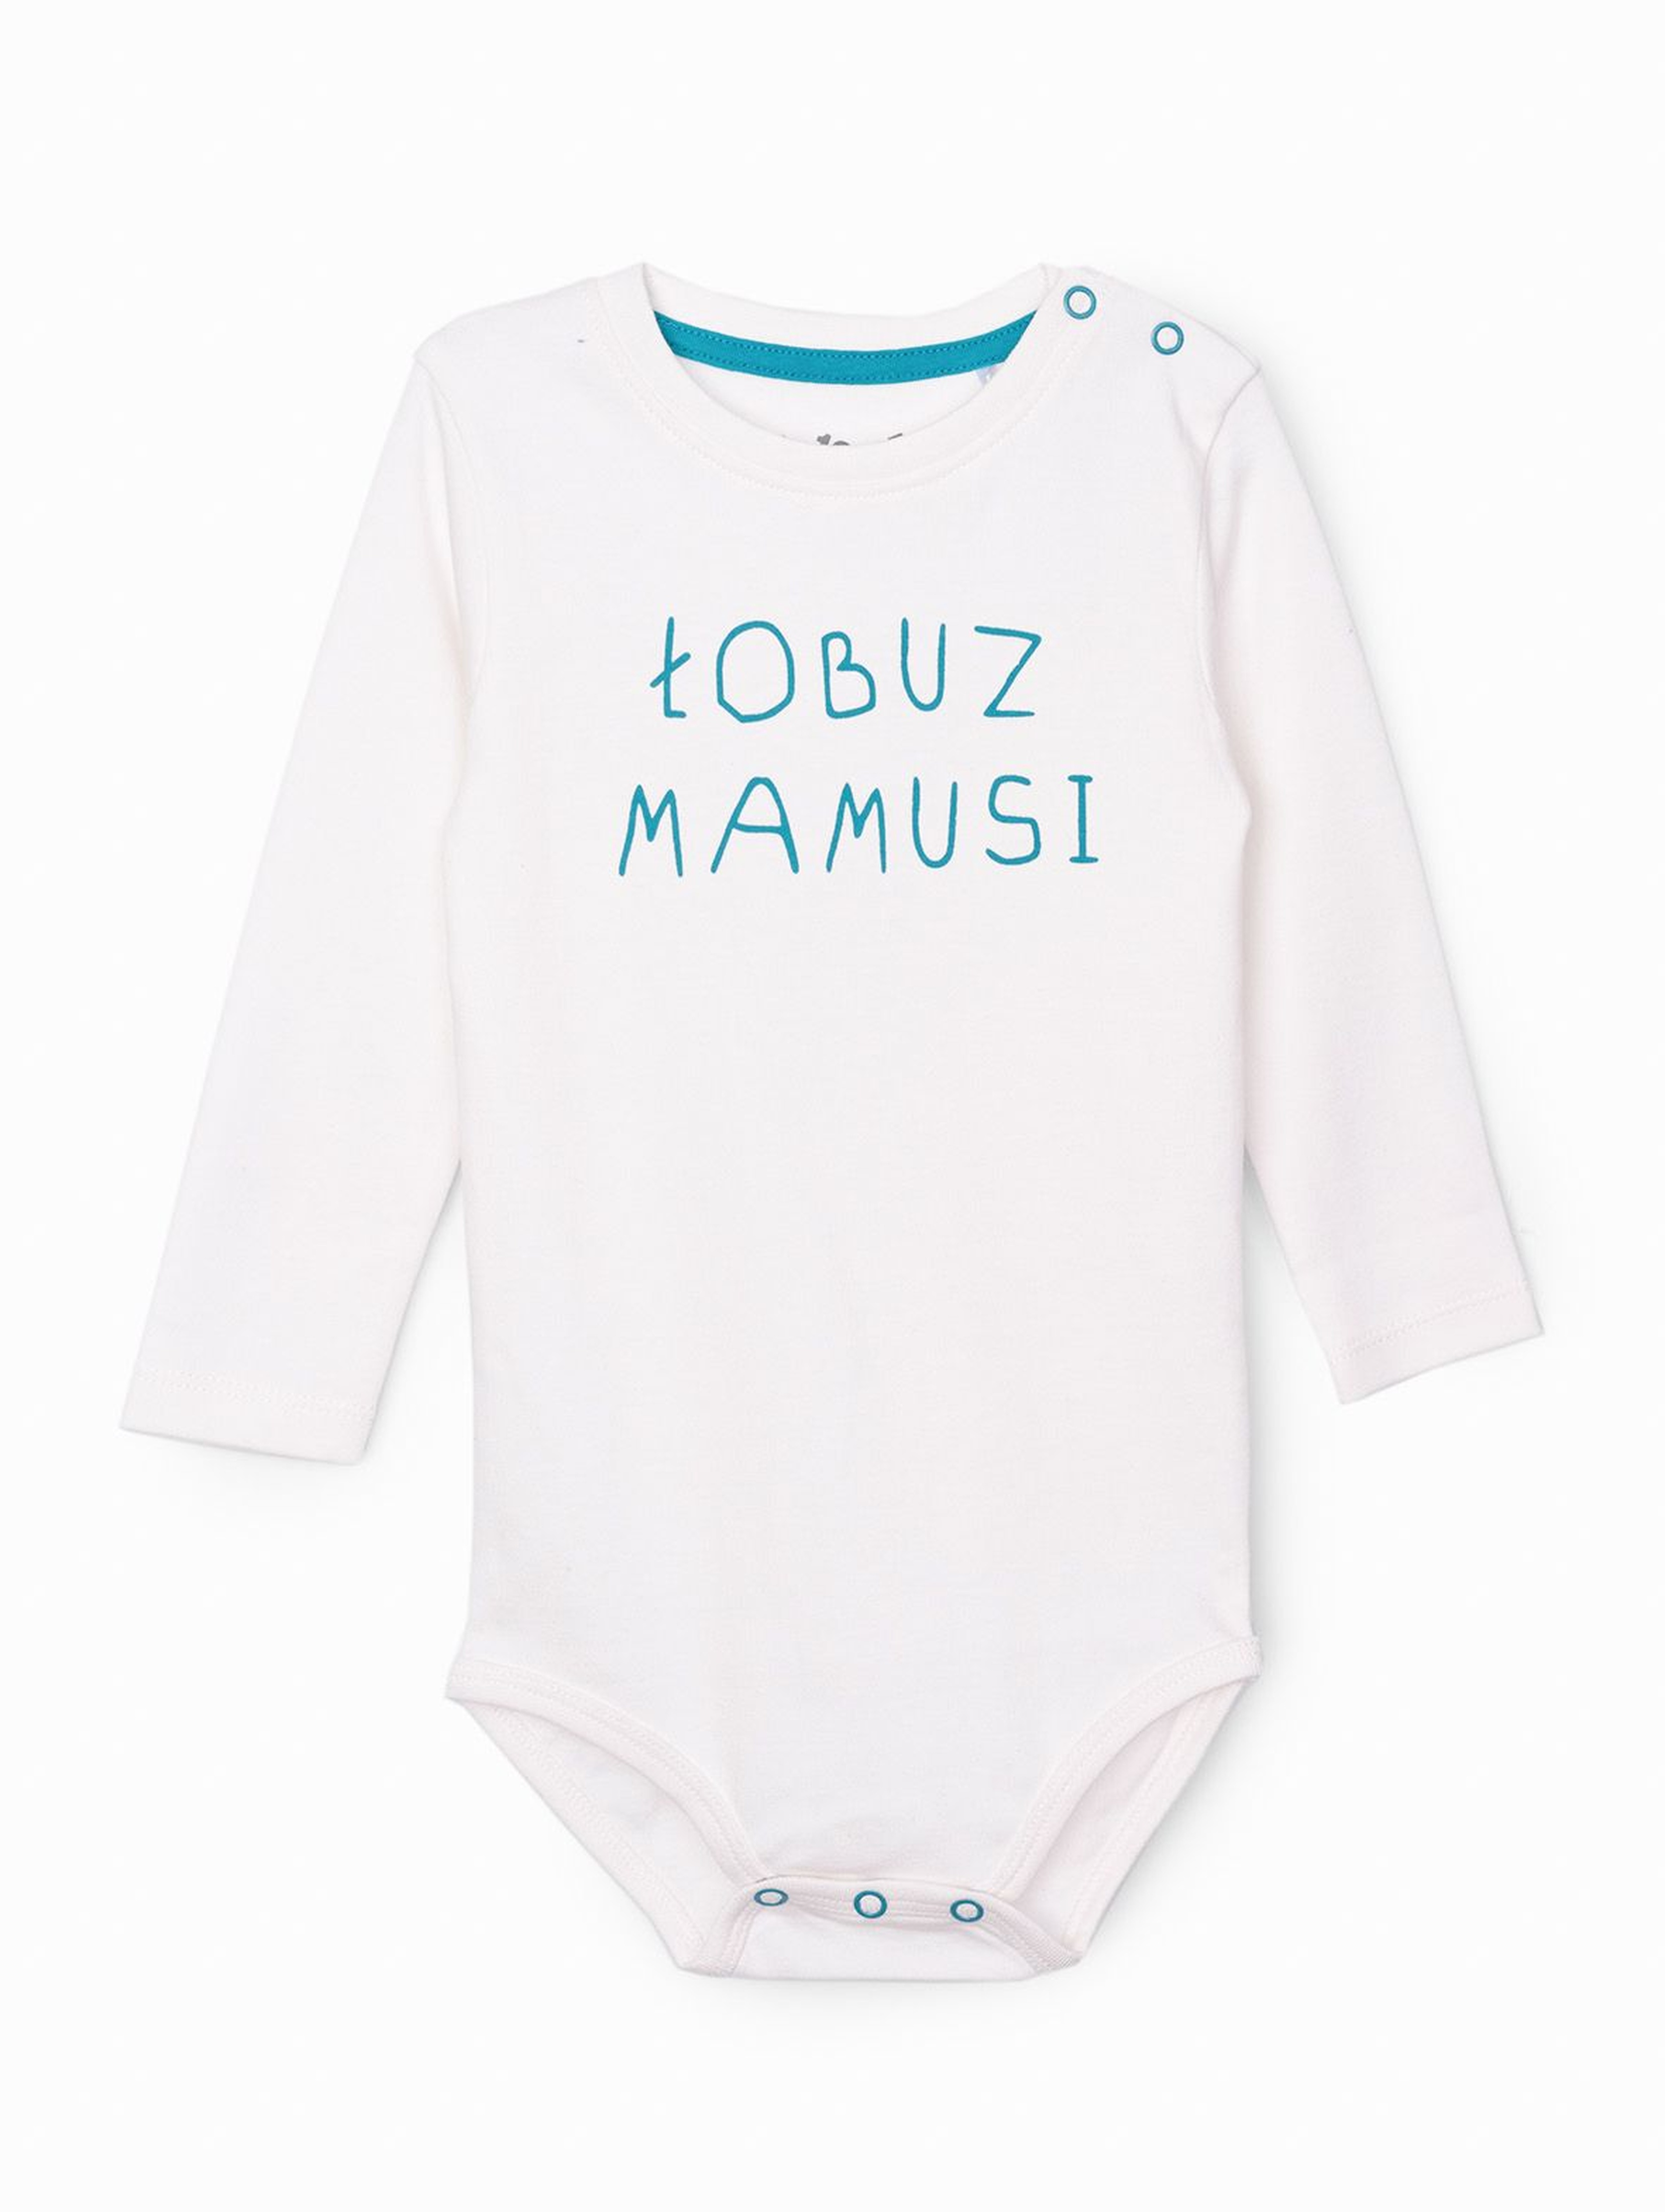 Body niemowlęce na długi rękaw z polskim napisem - ŁOBUZ MAMUSI